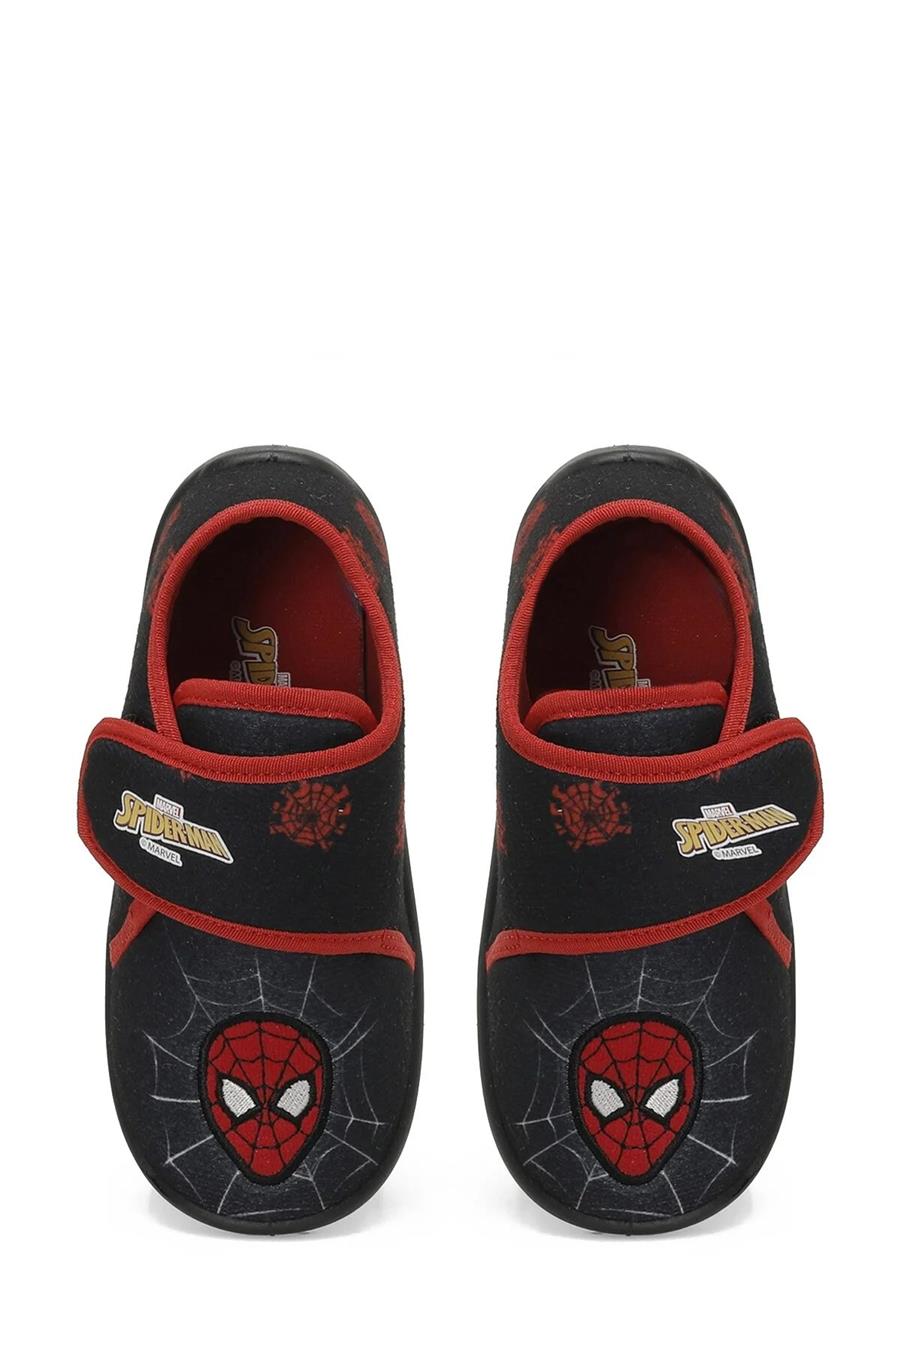 Spiderman Tarbın P3Pr Siyah Patik Erkek Çocuk Panduf Ayakkabı